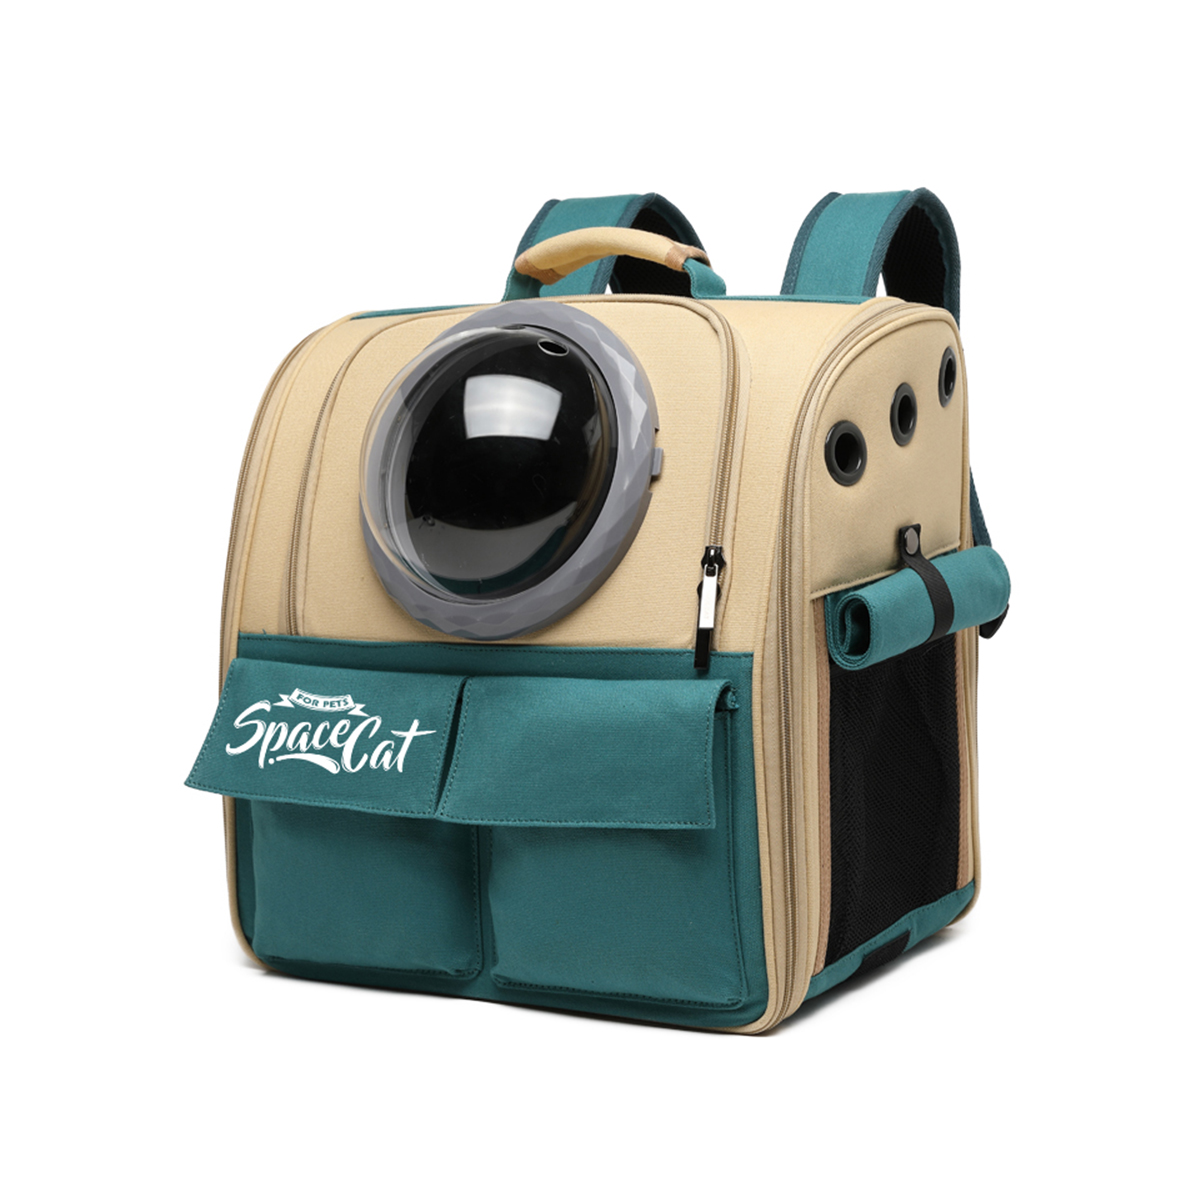 ペットキャリーリュック 犬 猫 小型 ケース バッグ おしゃれ ペット用品 ペットリュック メッシュ トリミング 散歩 ドライブ 防災 病院